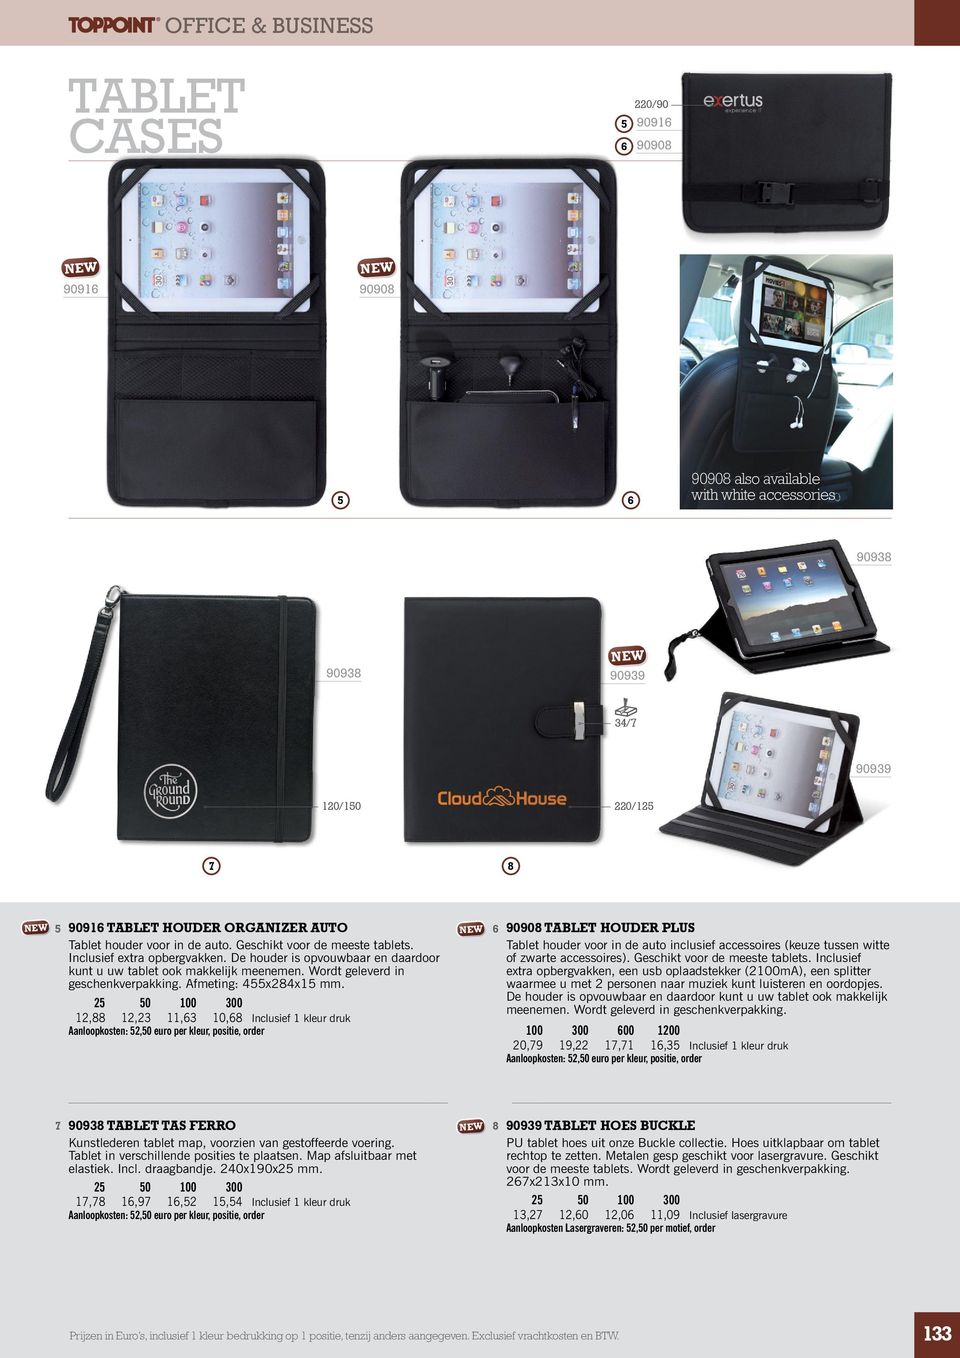 Afmeting: x8x mm. 0 00 300,88,3,3 0,8 Inclusief kleur druk 90908 TABLET HOUDER PLUS Tablet houder voor in de auto inclusief accessoires (keuze tussen witte of zwarte accessoires).